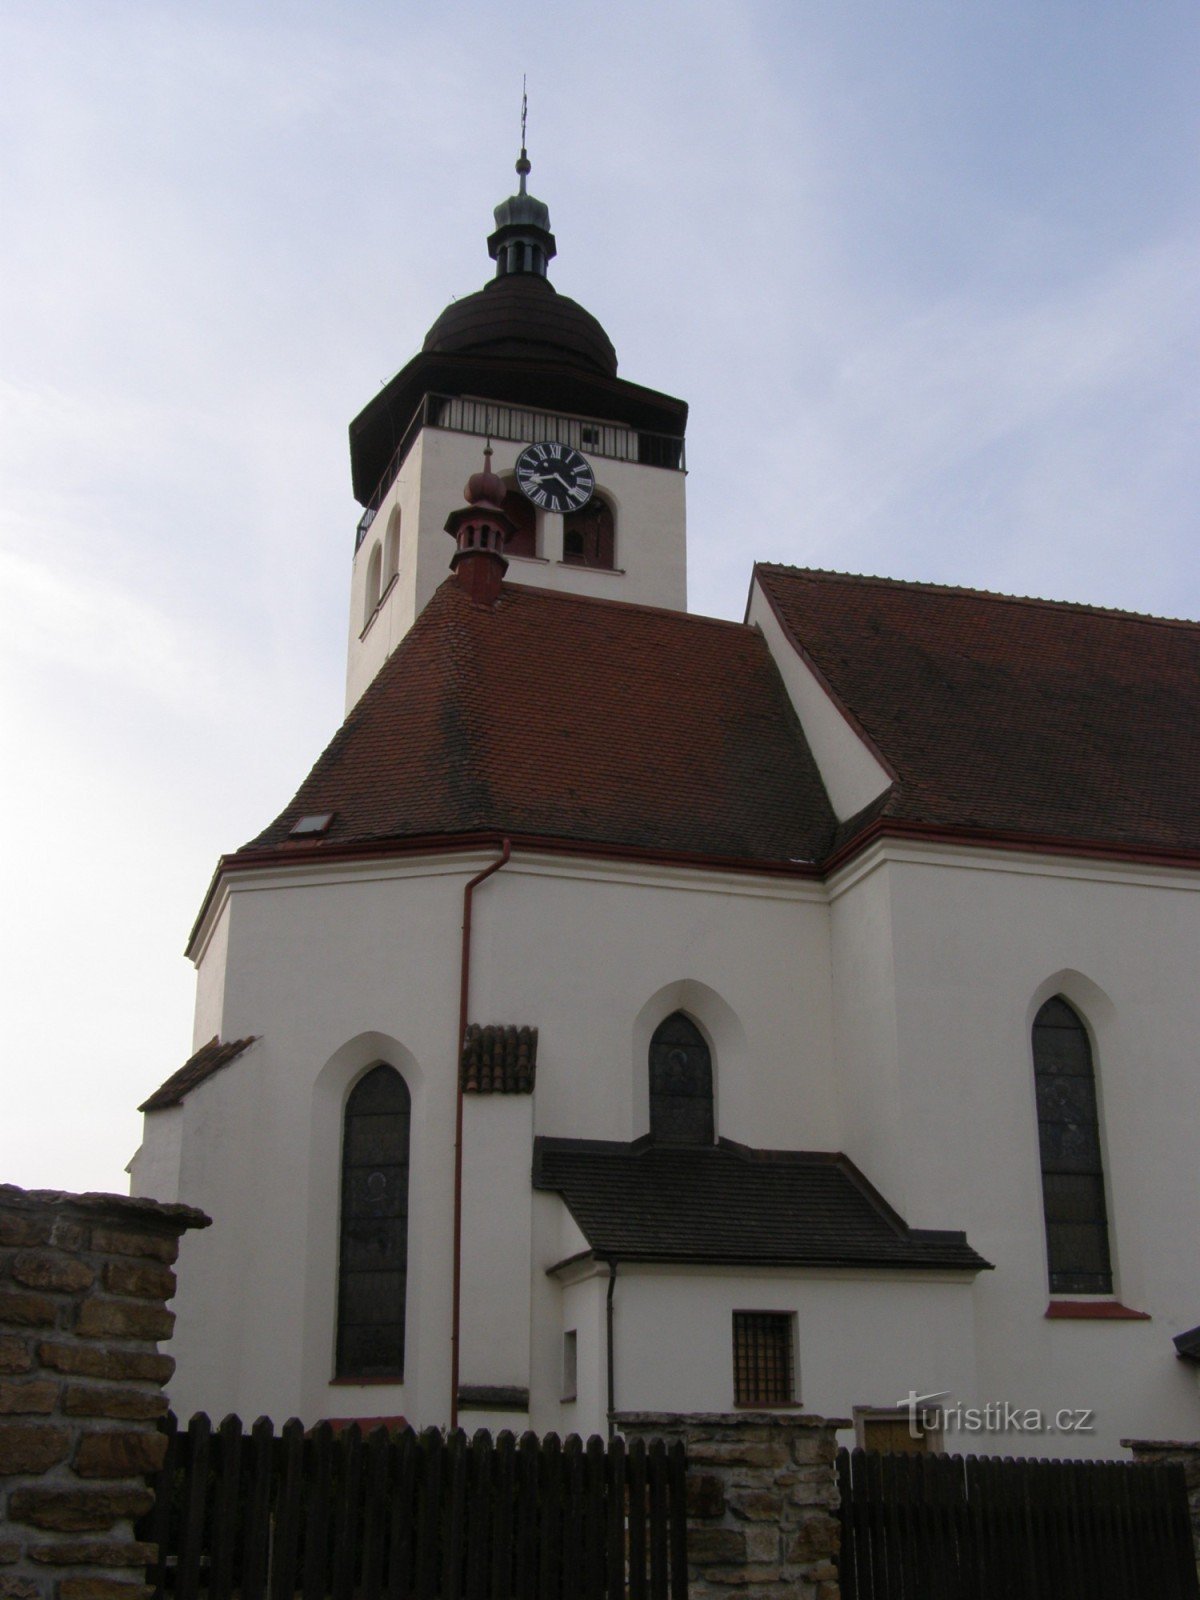 Nové Město nad Metují - Church of the Holy Trinity